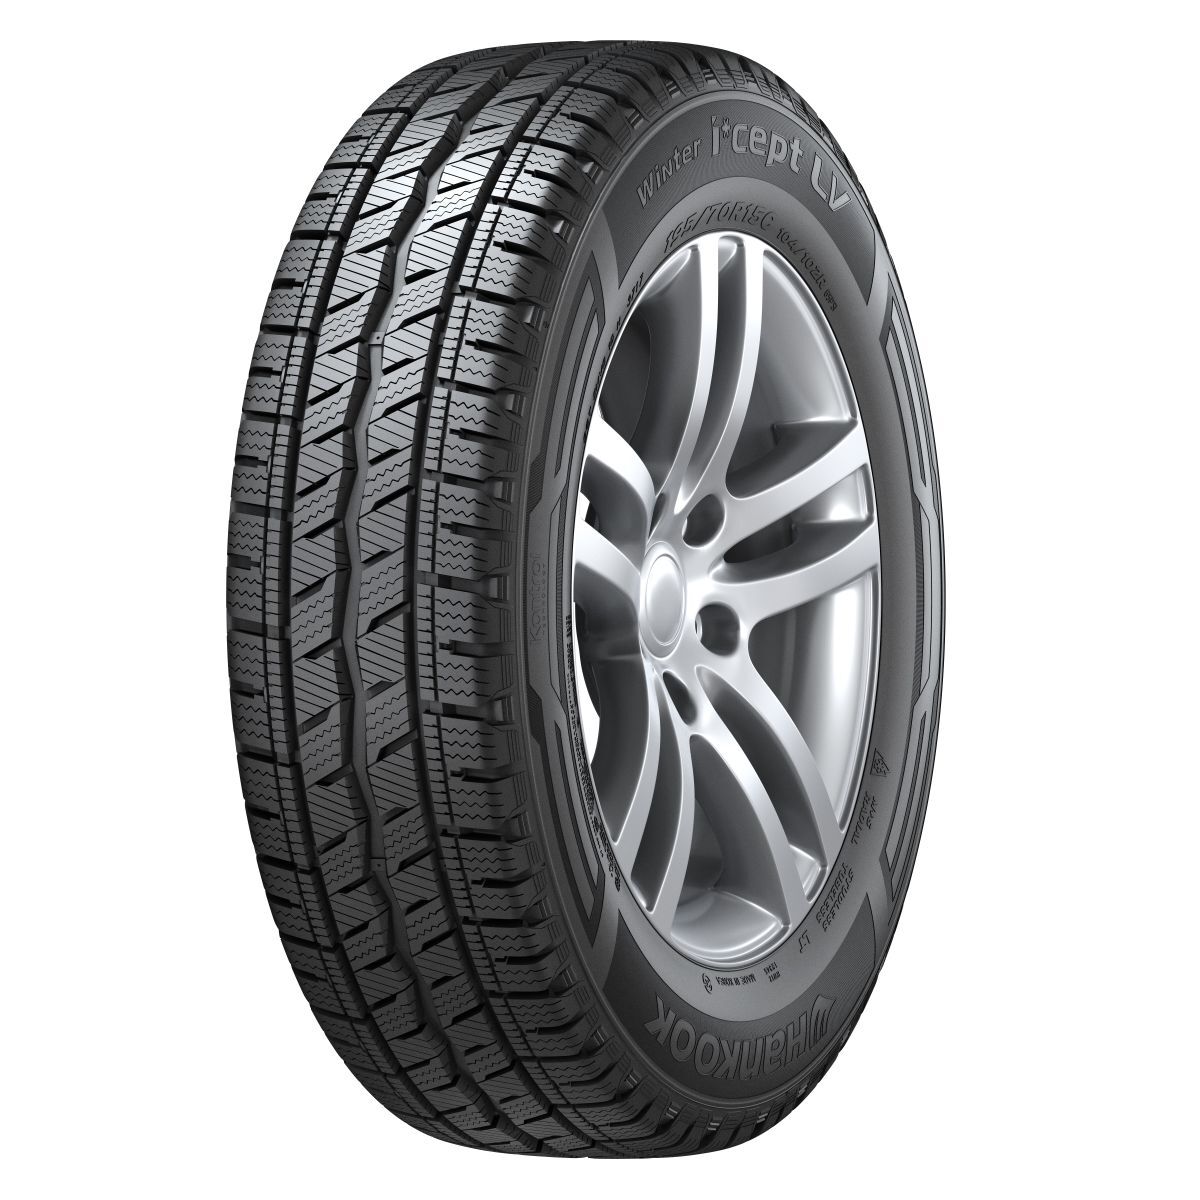 Neumáticos de invierno HANKOOK Winter I*cept LV RW12 225/65R16C, 112/110R TL